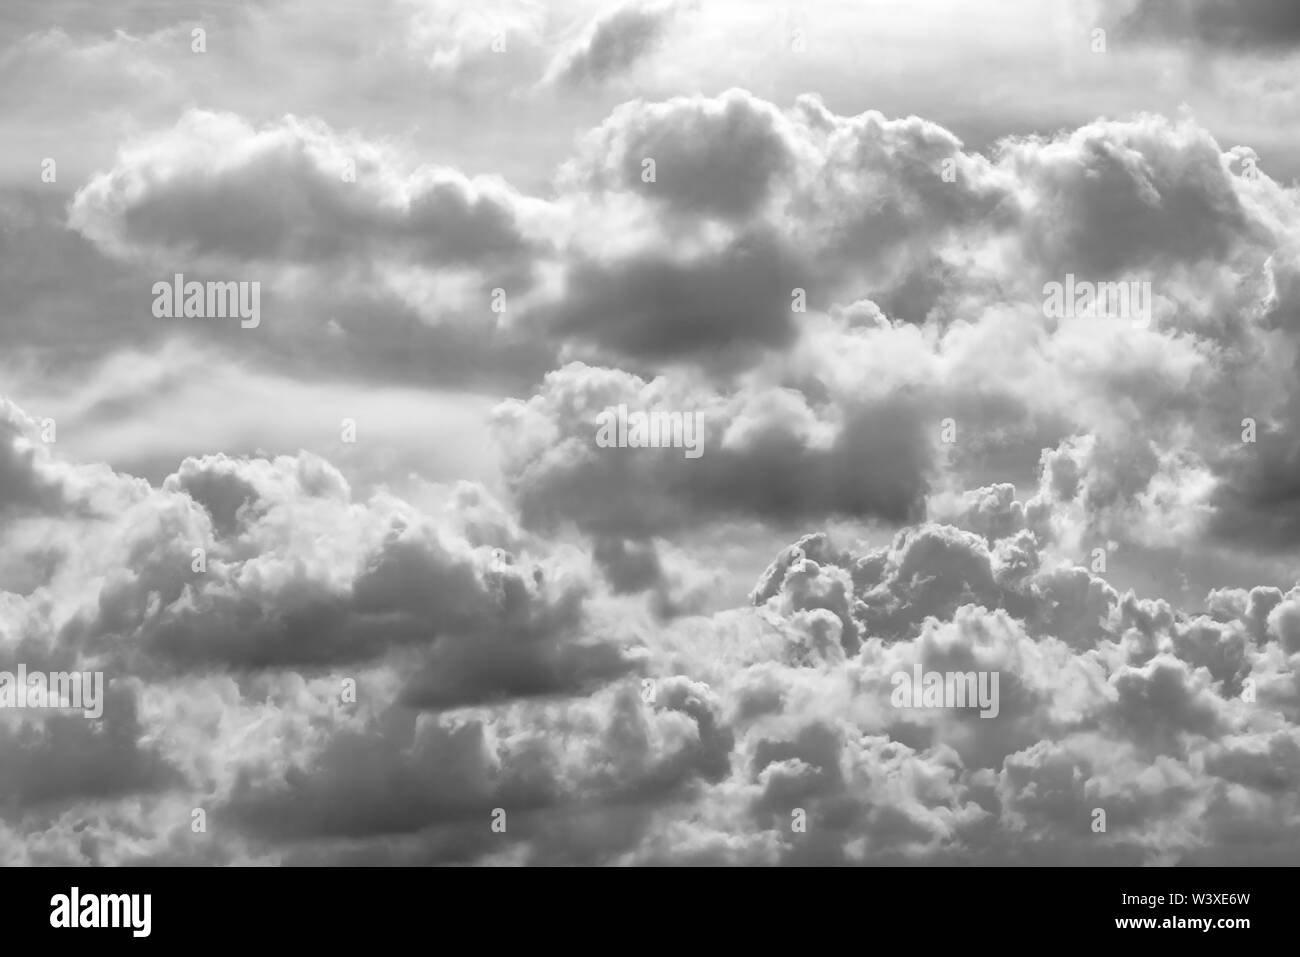 Graue und weiße Wolke abstrakt Hintergrund. Traurig, tot, hoffnungslos, und Verzweiflung Hintergrund. Donner und Sturm Konzept. Grauer Himmel und flauschige Wolken. Pech Stockfoto